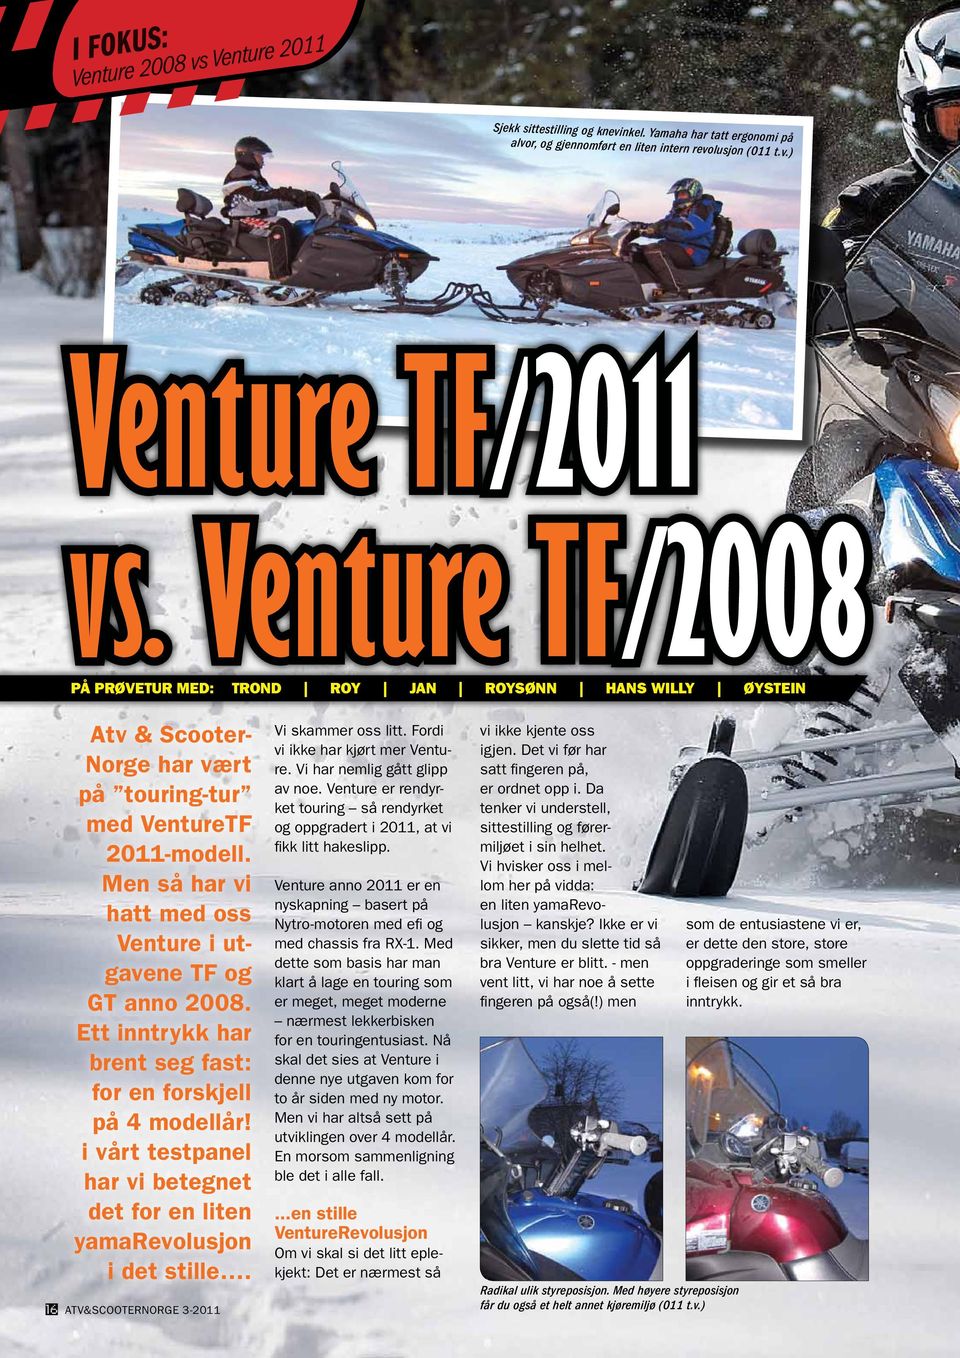 Men så har vi hatt med oss Venture i utgavene TF og GT anno 2008. Ett inntrykk har brent seg fast: for en forskjell på 4 modellår!